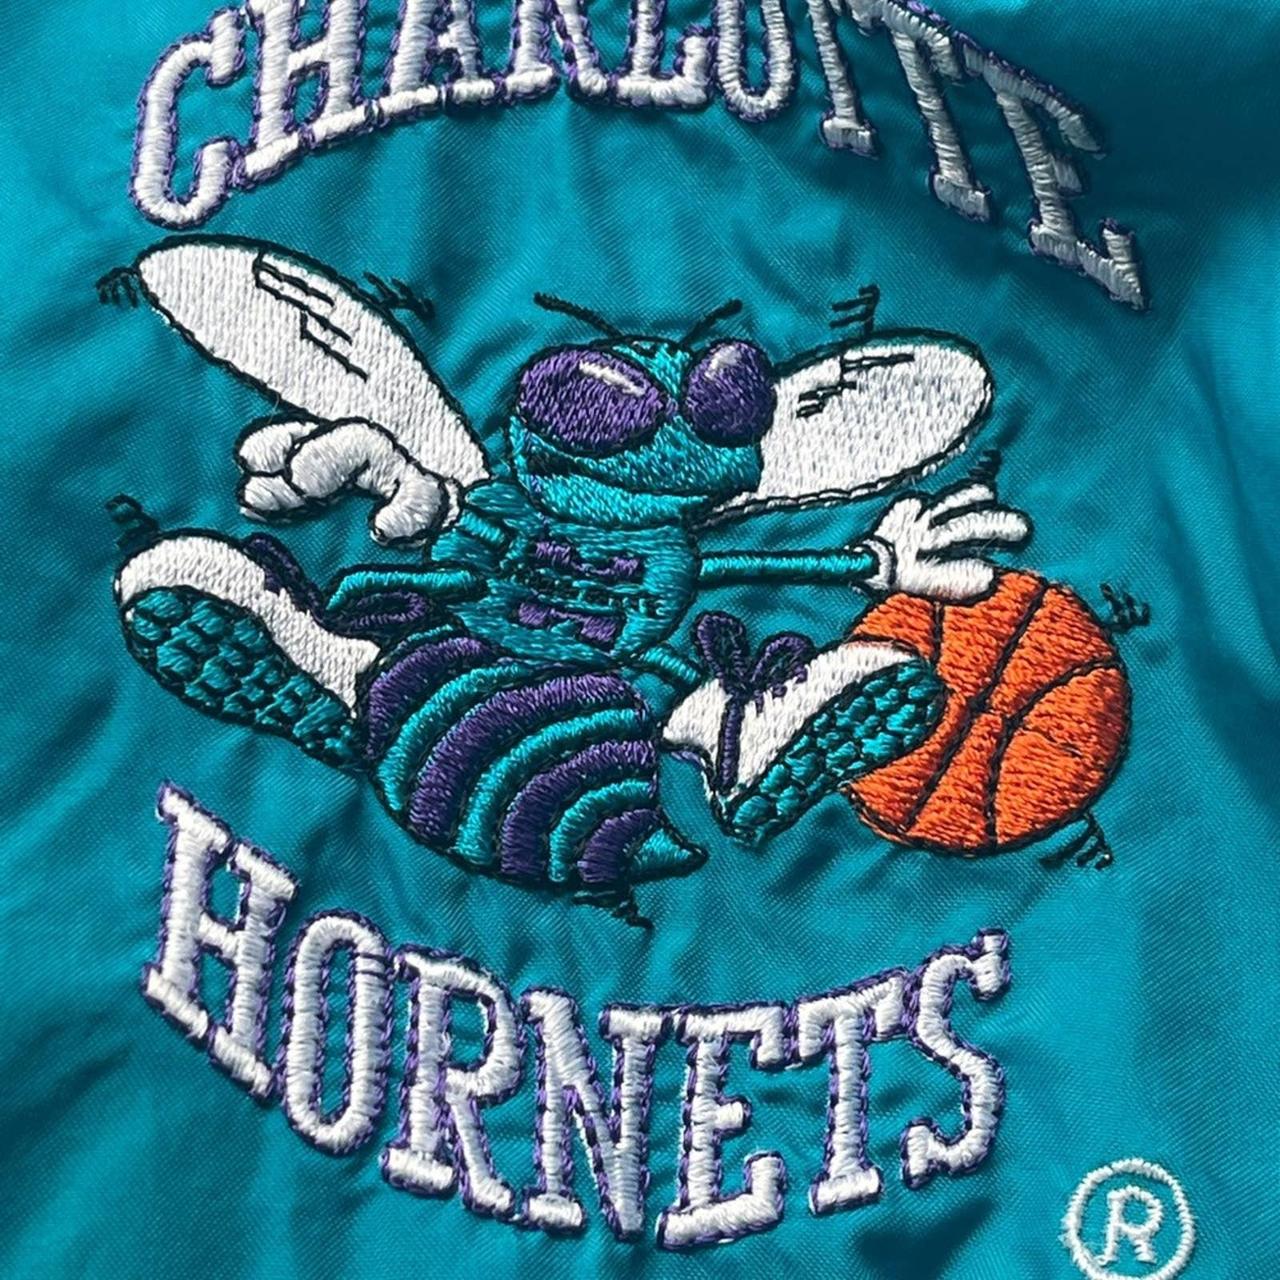 1990's Charlotte Hornets Starter Jacket. Snap - Depop